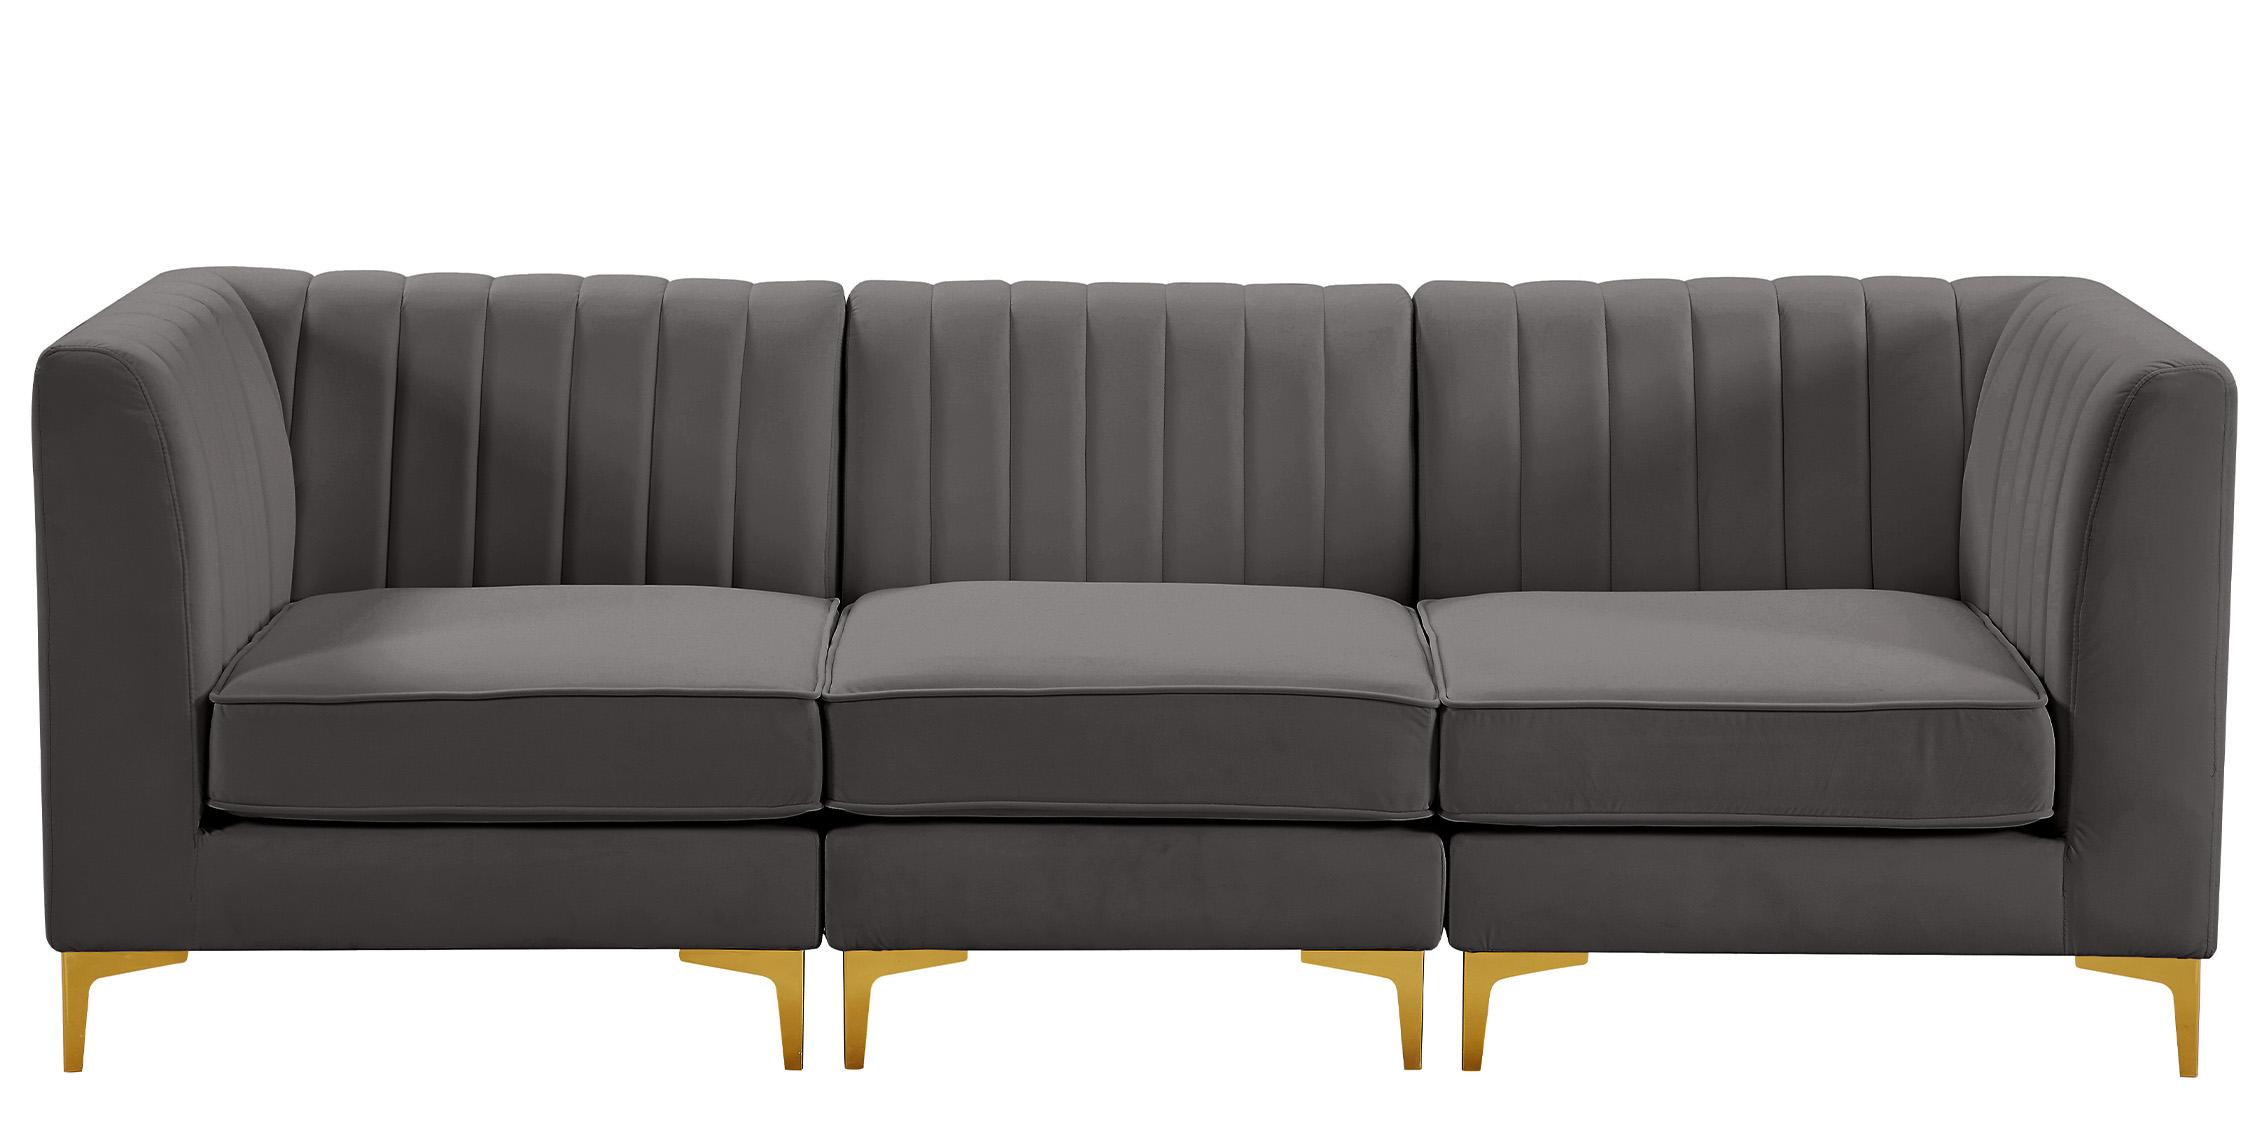 

    
Meridian Furniture ALINA 604Grey-S93 Modular Sectional Sofa Gray 604Grey-S93
